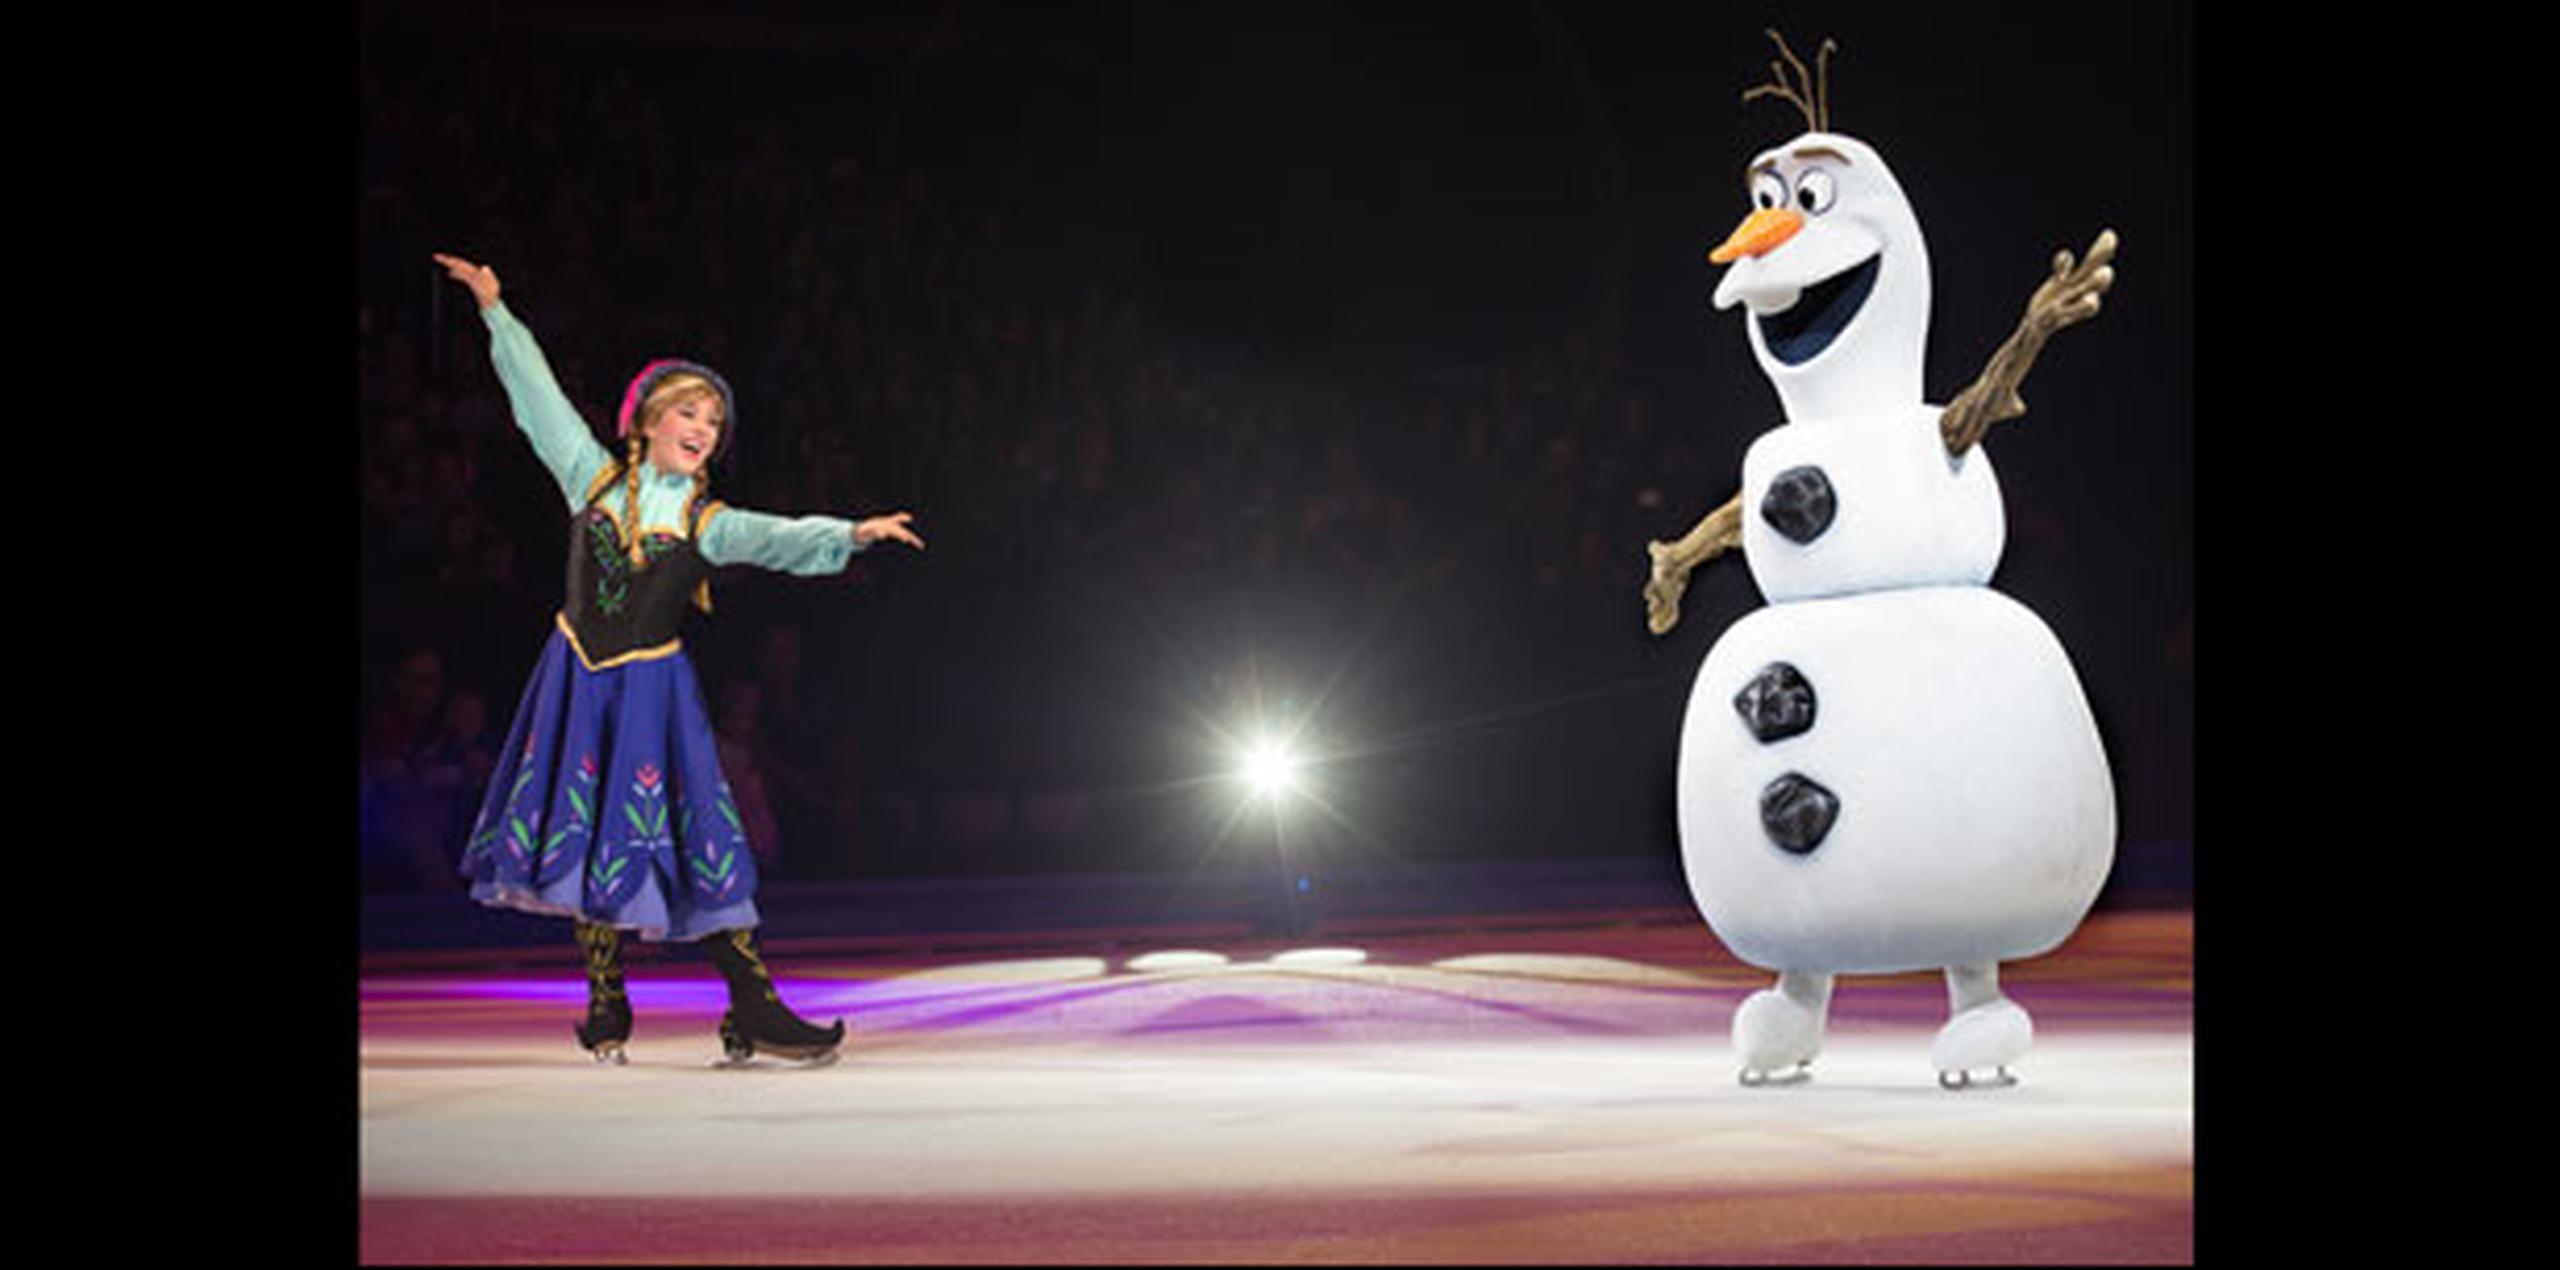 Algunos de los personajes que se darán cita en la pista de patinaje estarán “Anna”, “Elsa y “Olaf”, de la exitosa película animada “Frozen”, así como “Nemo”, “Rapunzel”, entre otros. (Suministrada)